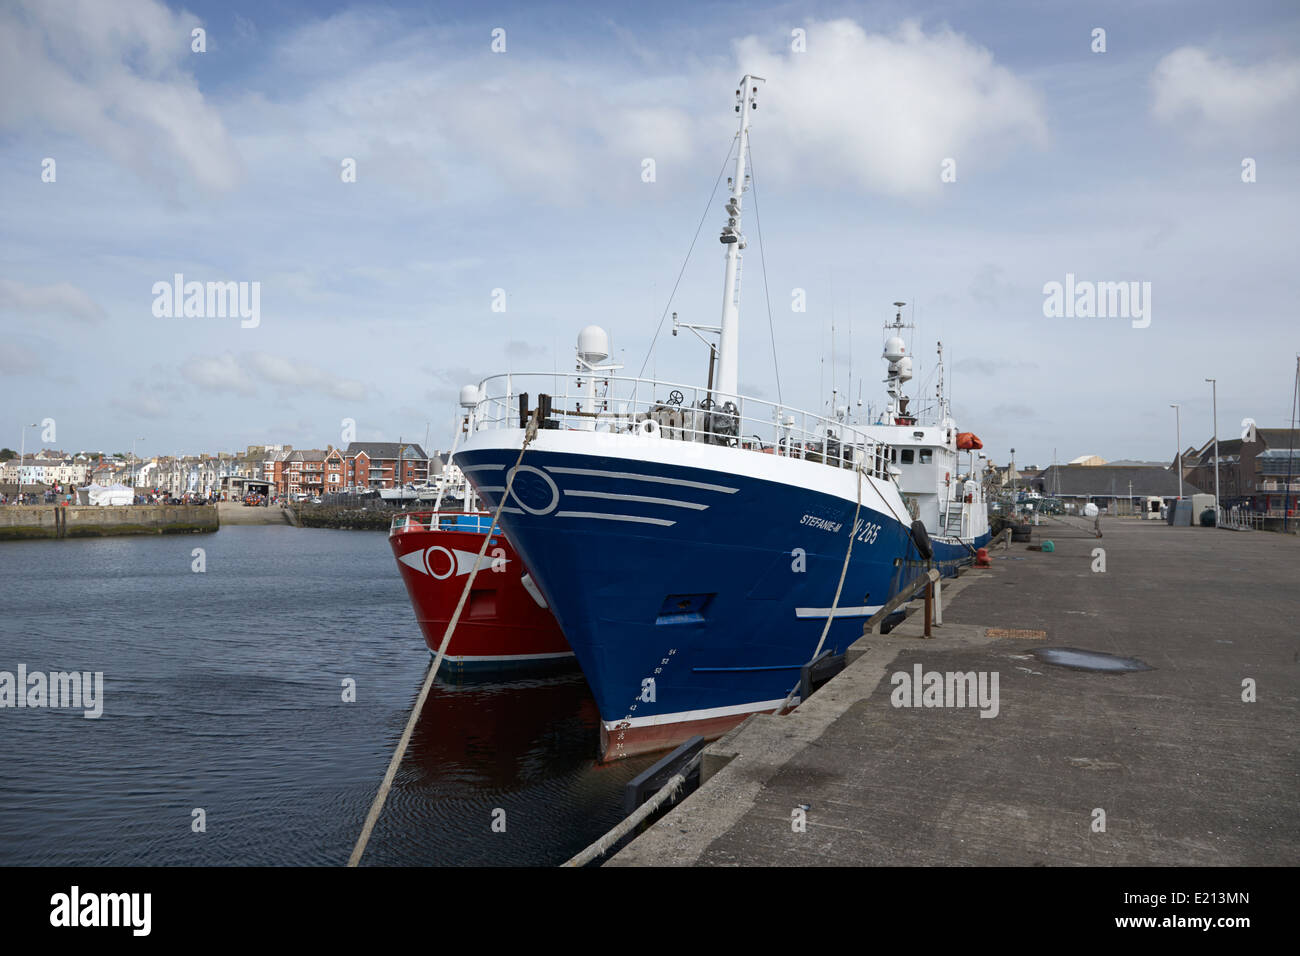 Bateaux de pêche dans le port de Bangor Northern Ireland Banque D'Images